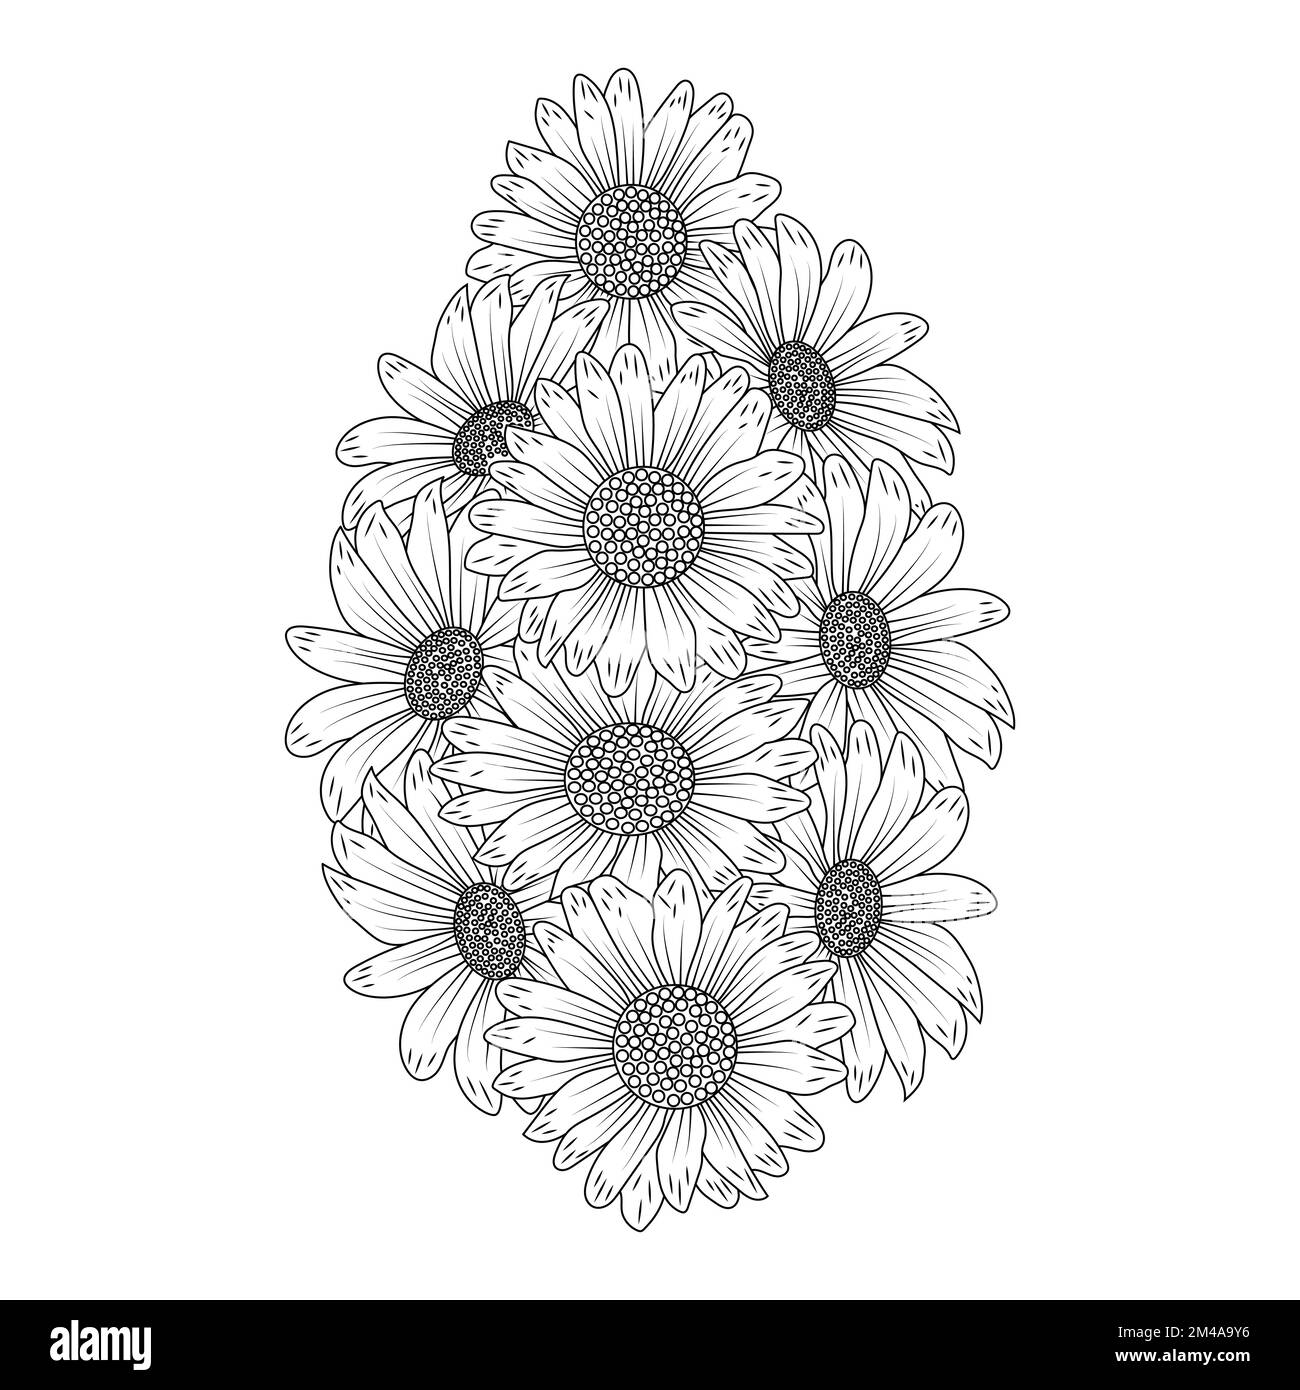 daisy fiore adulto colorazione libro pagina disegno di linea nera disegno bello daisy fiore bouquet Illustrazione Vettoriale